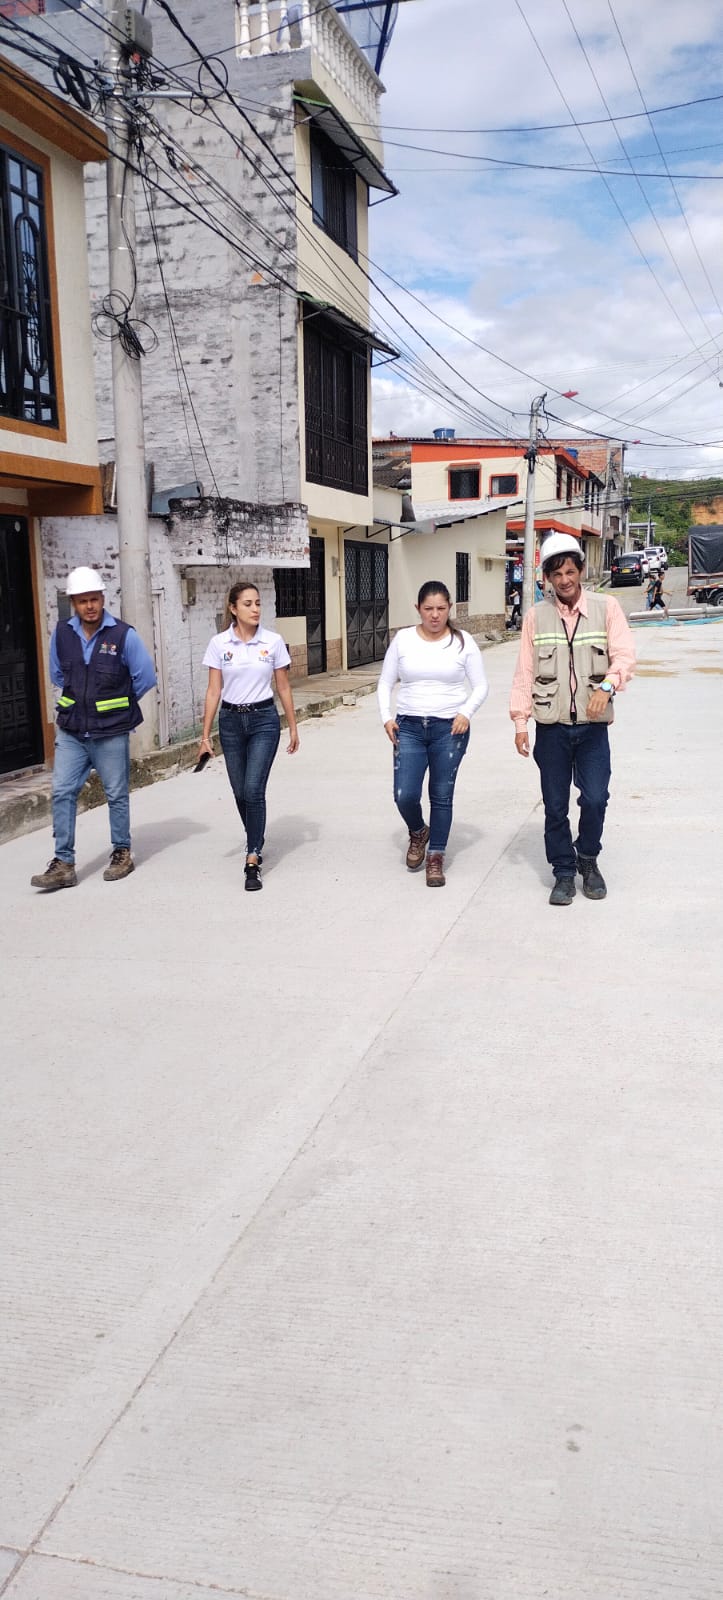 La gobernación del Tolima entregará 11 calles recuperadas en la Comuna Ocho de Ibagué